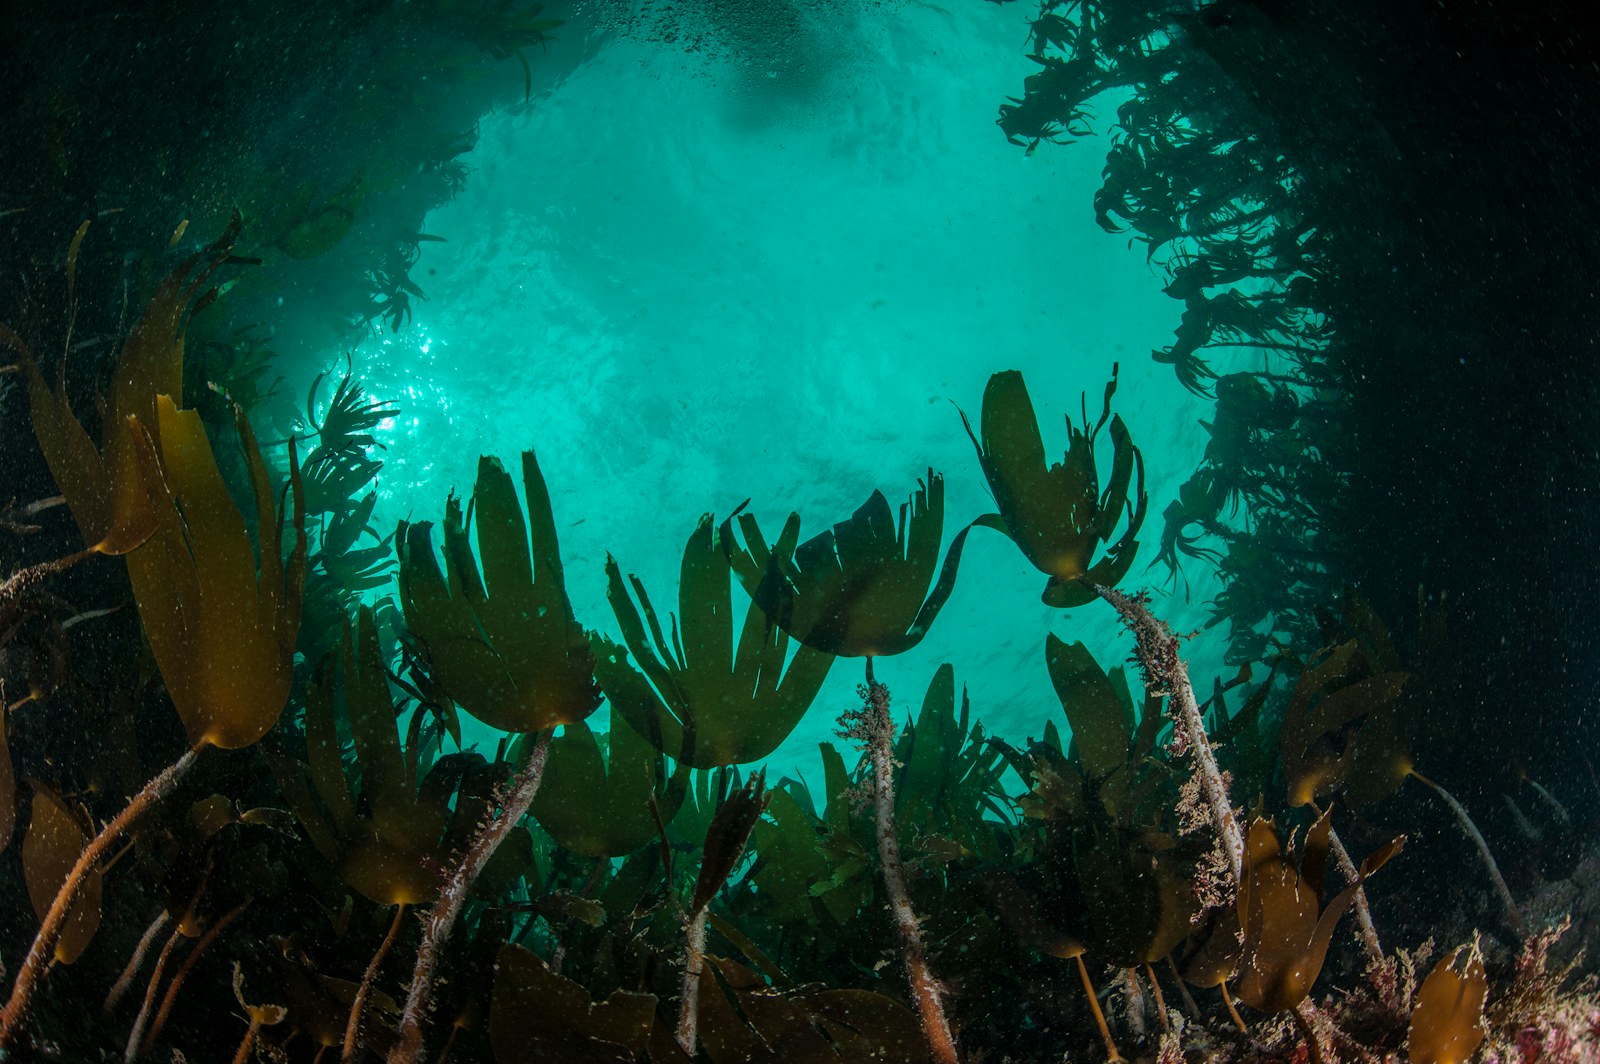 Underwater kelp forest, Scotland